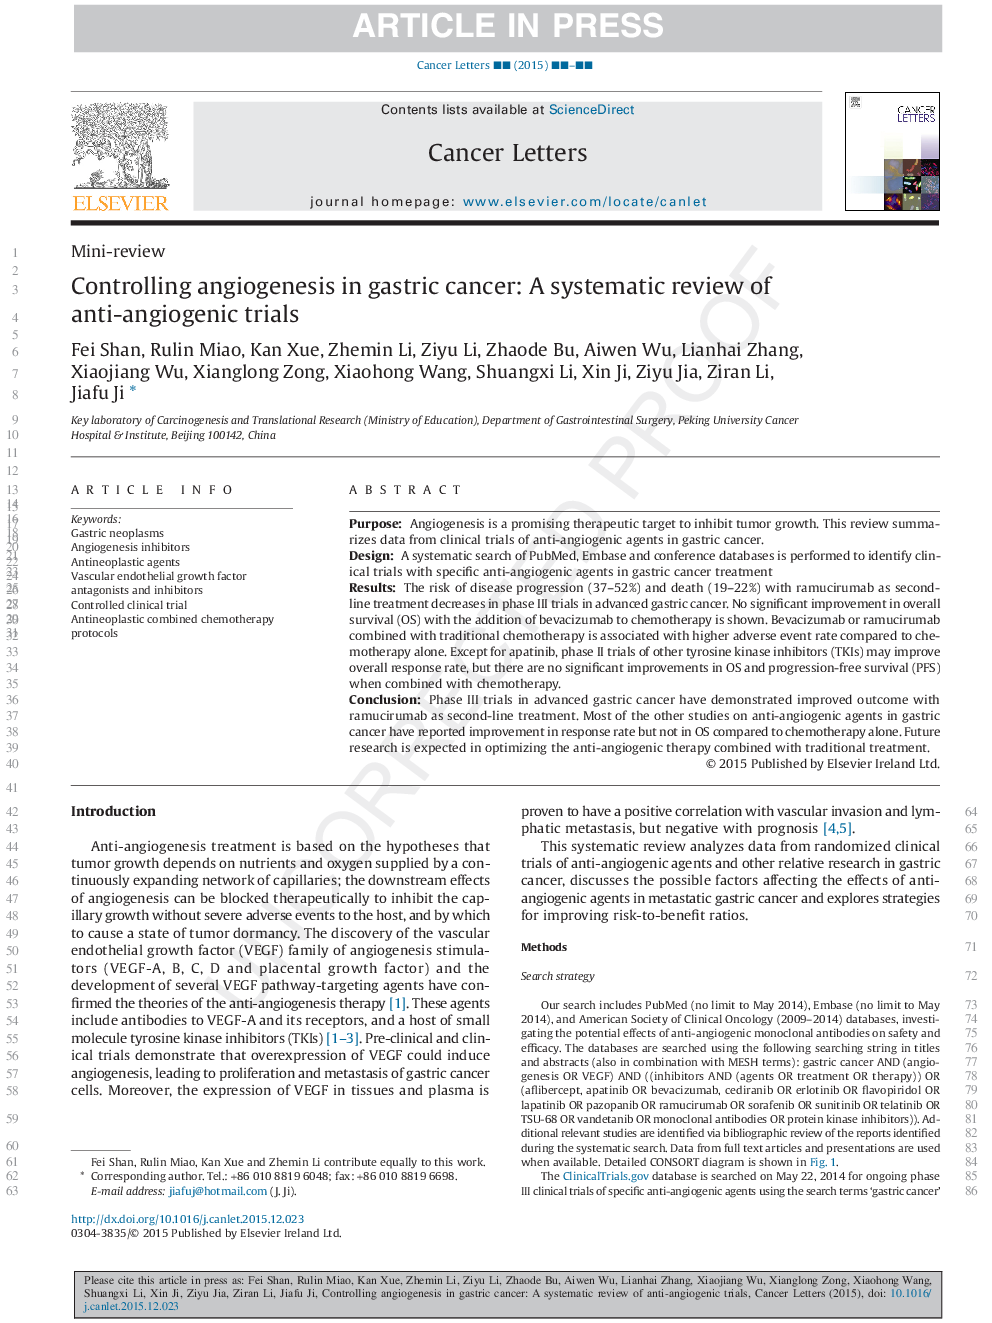 کنترل آنژیوژنز در سرطان معده: یک بررسی سیستماتیک از آزمایشات ضد انژیوژنیک 